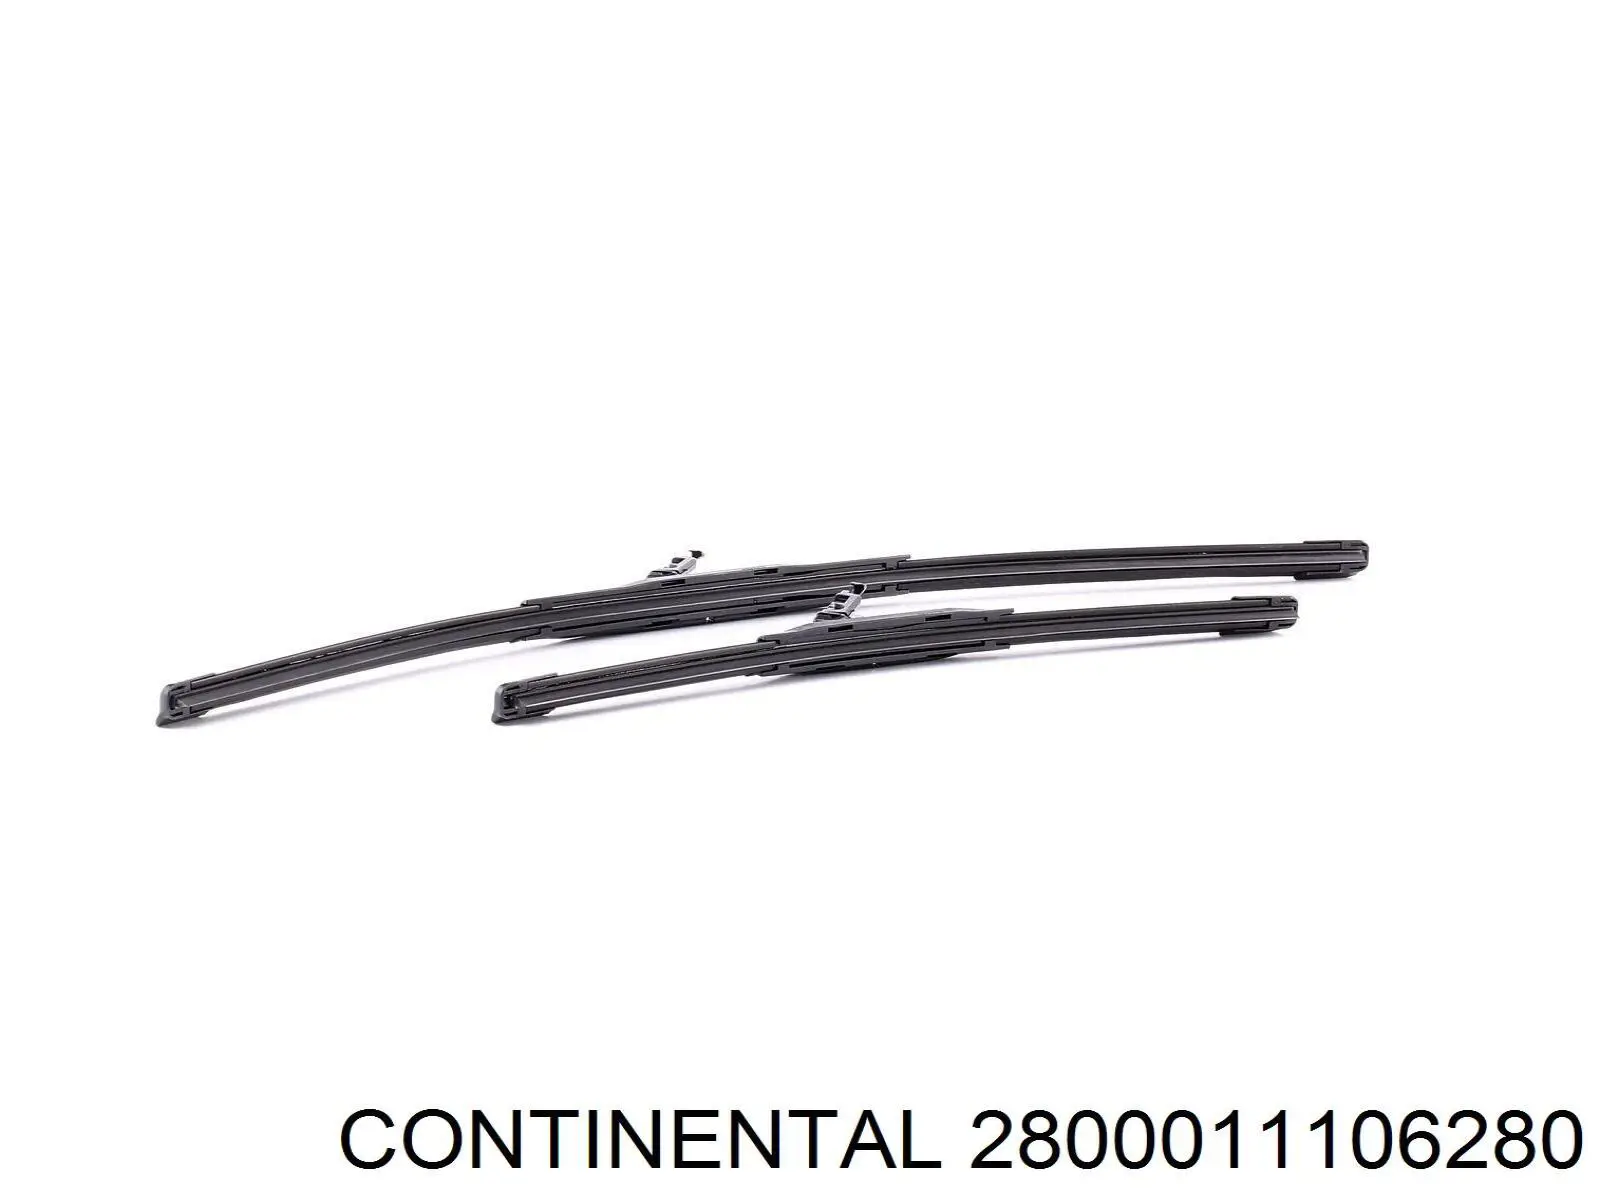 2800011106280 Continental/Siemens щетка-дворник лобового стекла, комплект из 2 шт.